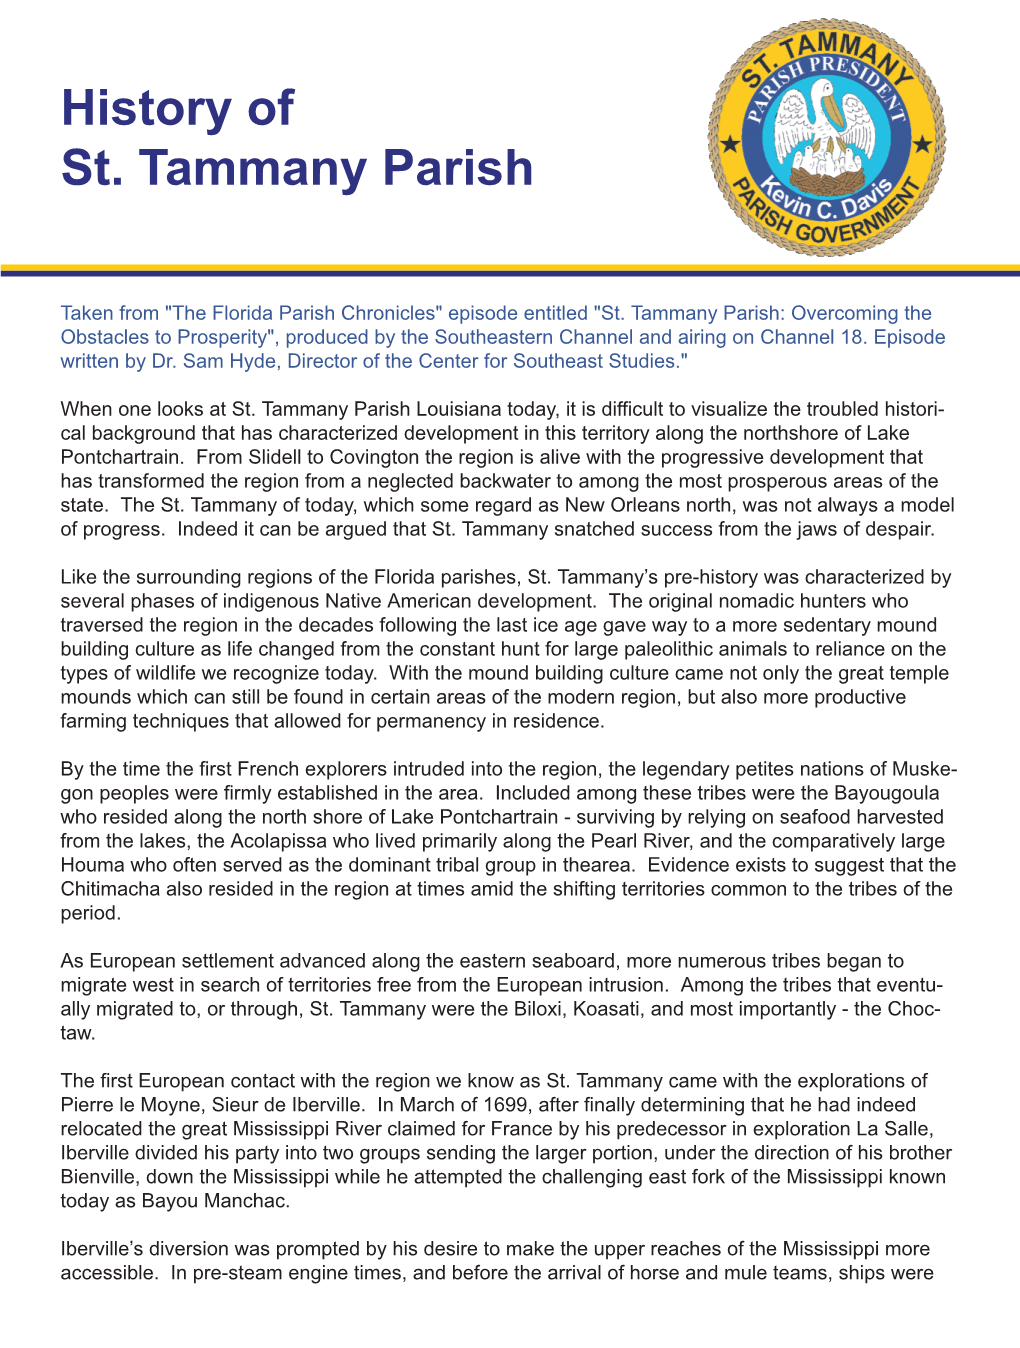 History of St. Tammany Parish